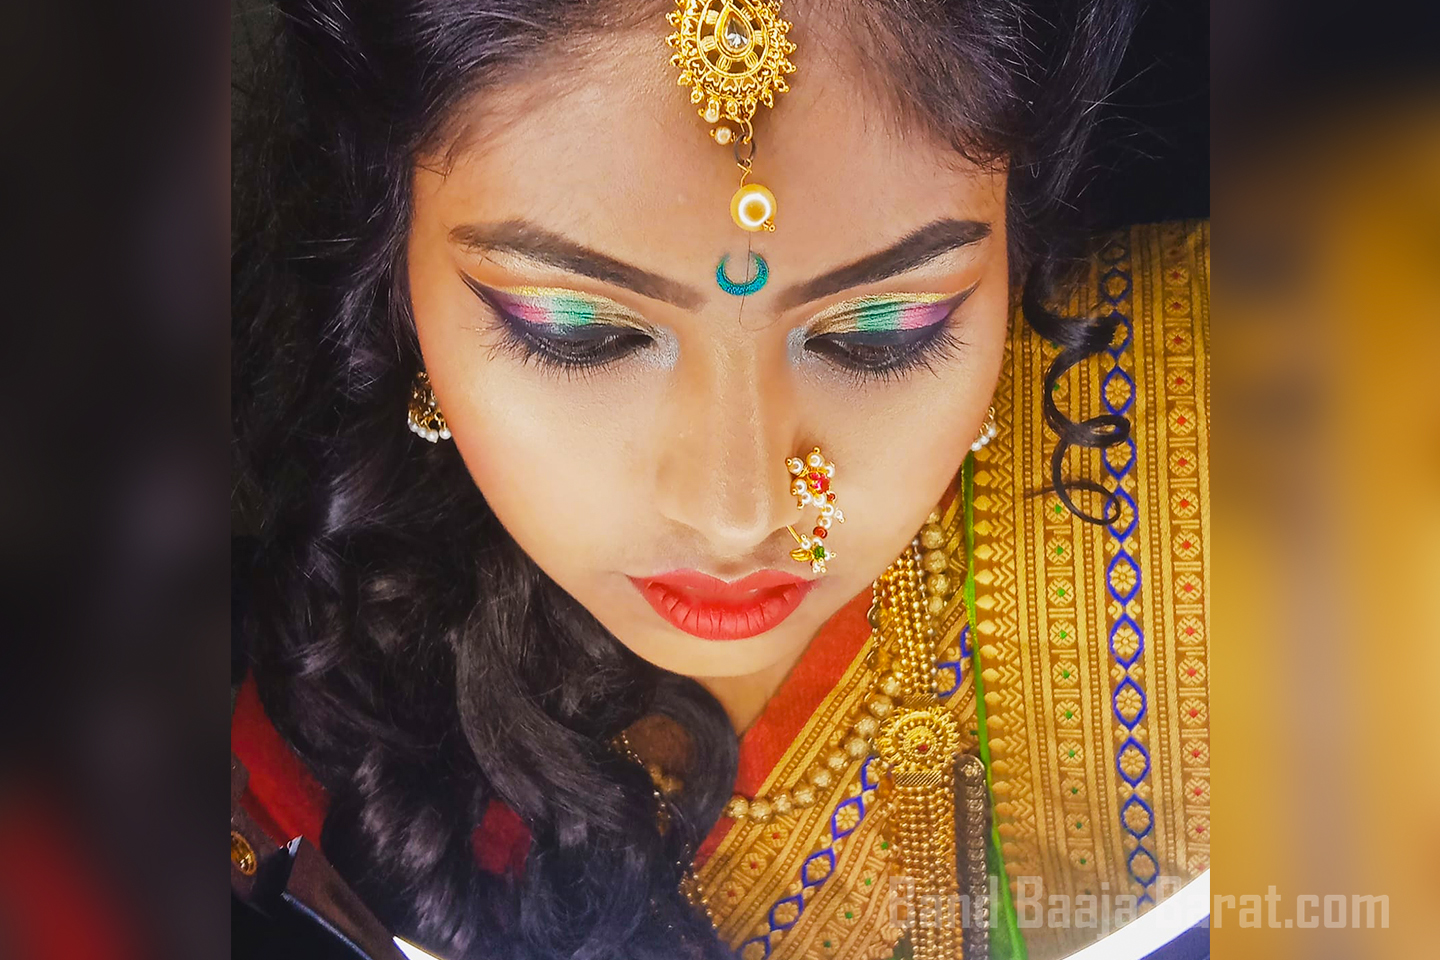 Hair & Makeup by Sneha in mumbai 